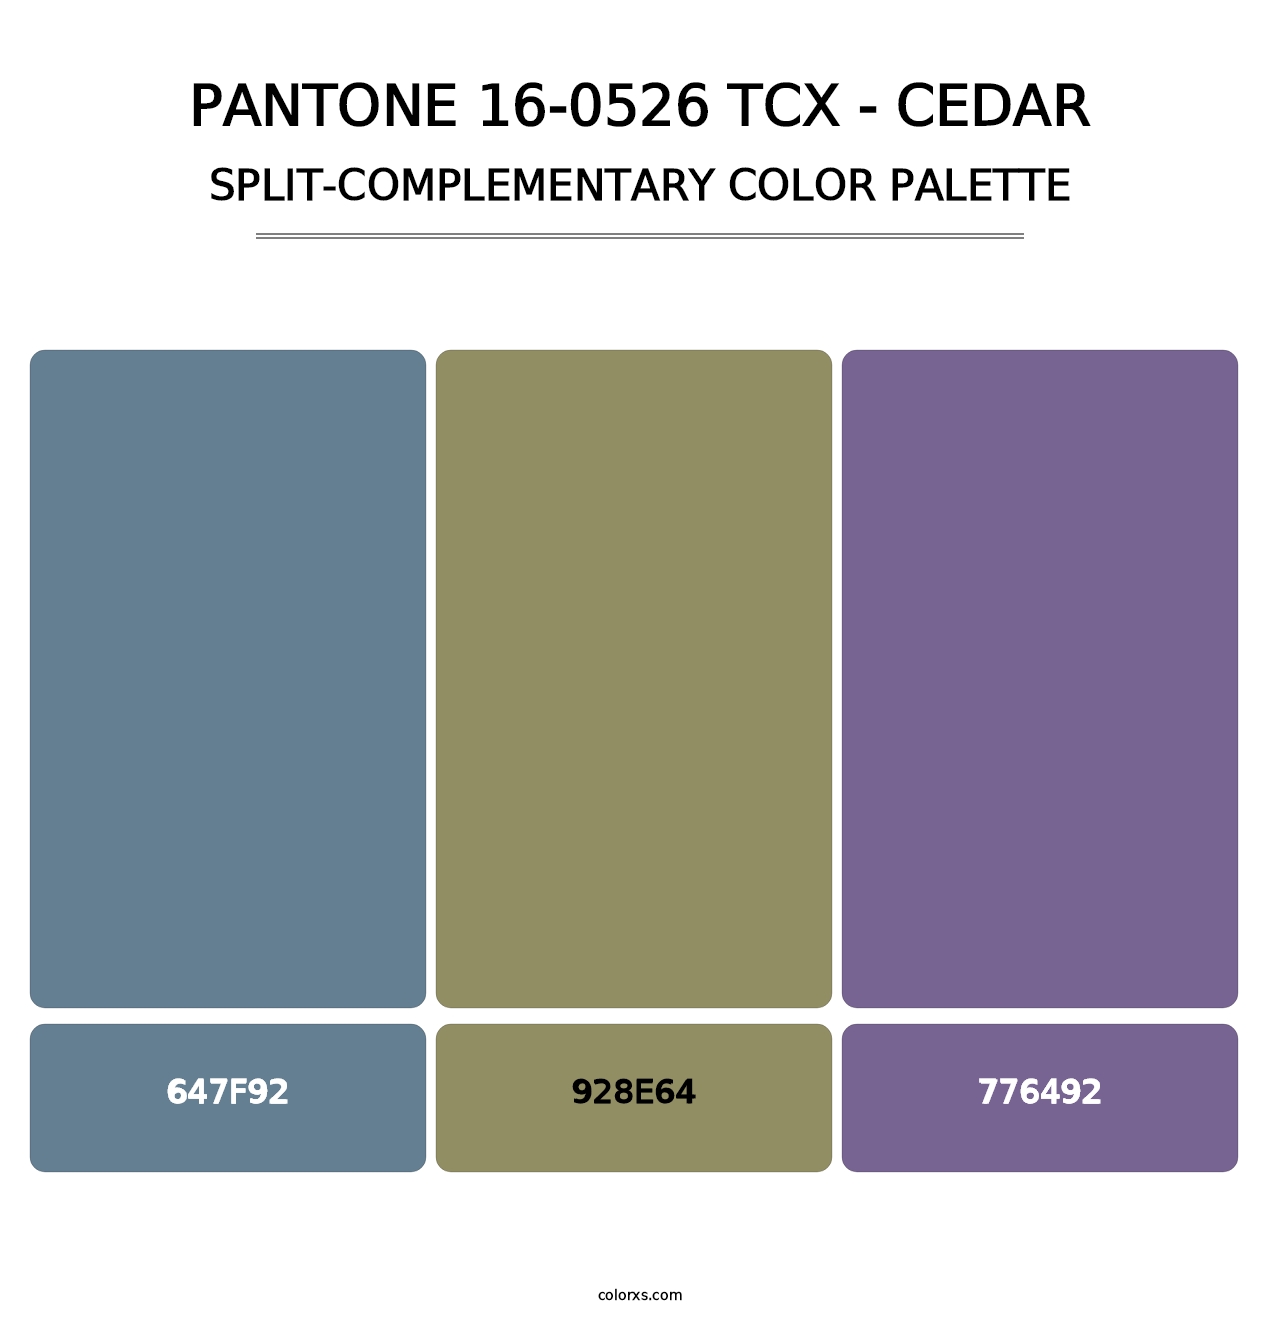 PANTONE 16-0526 TCX - Cedar - Split-Complementary Color Palette